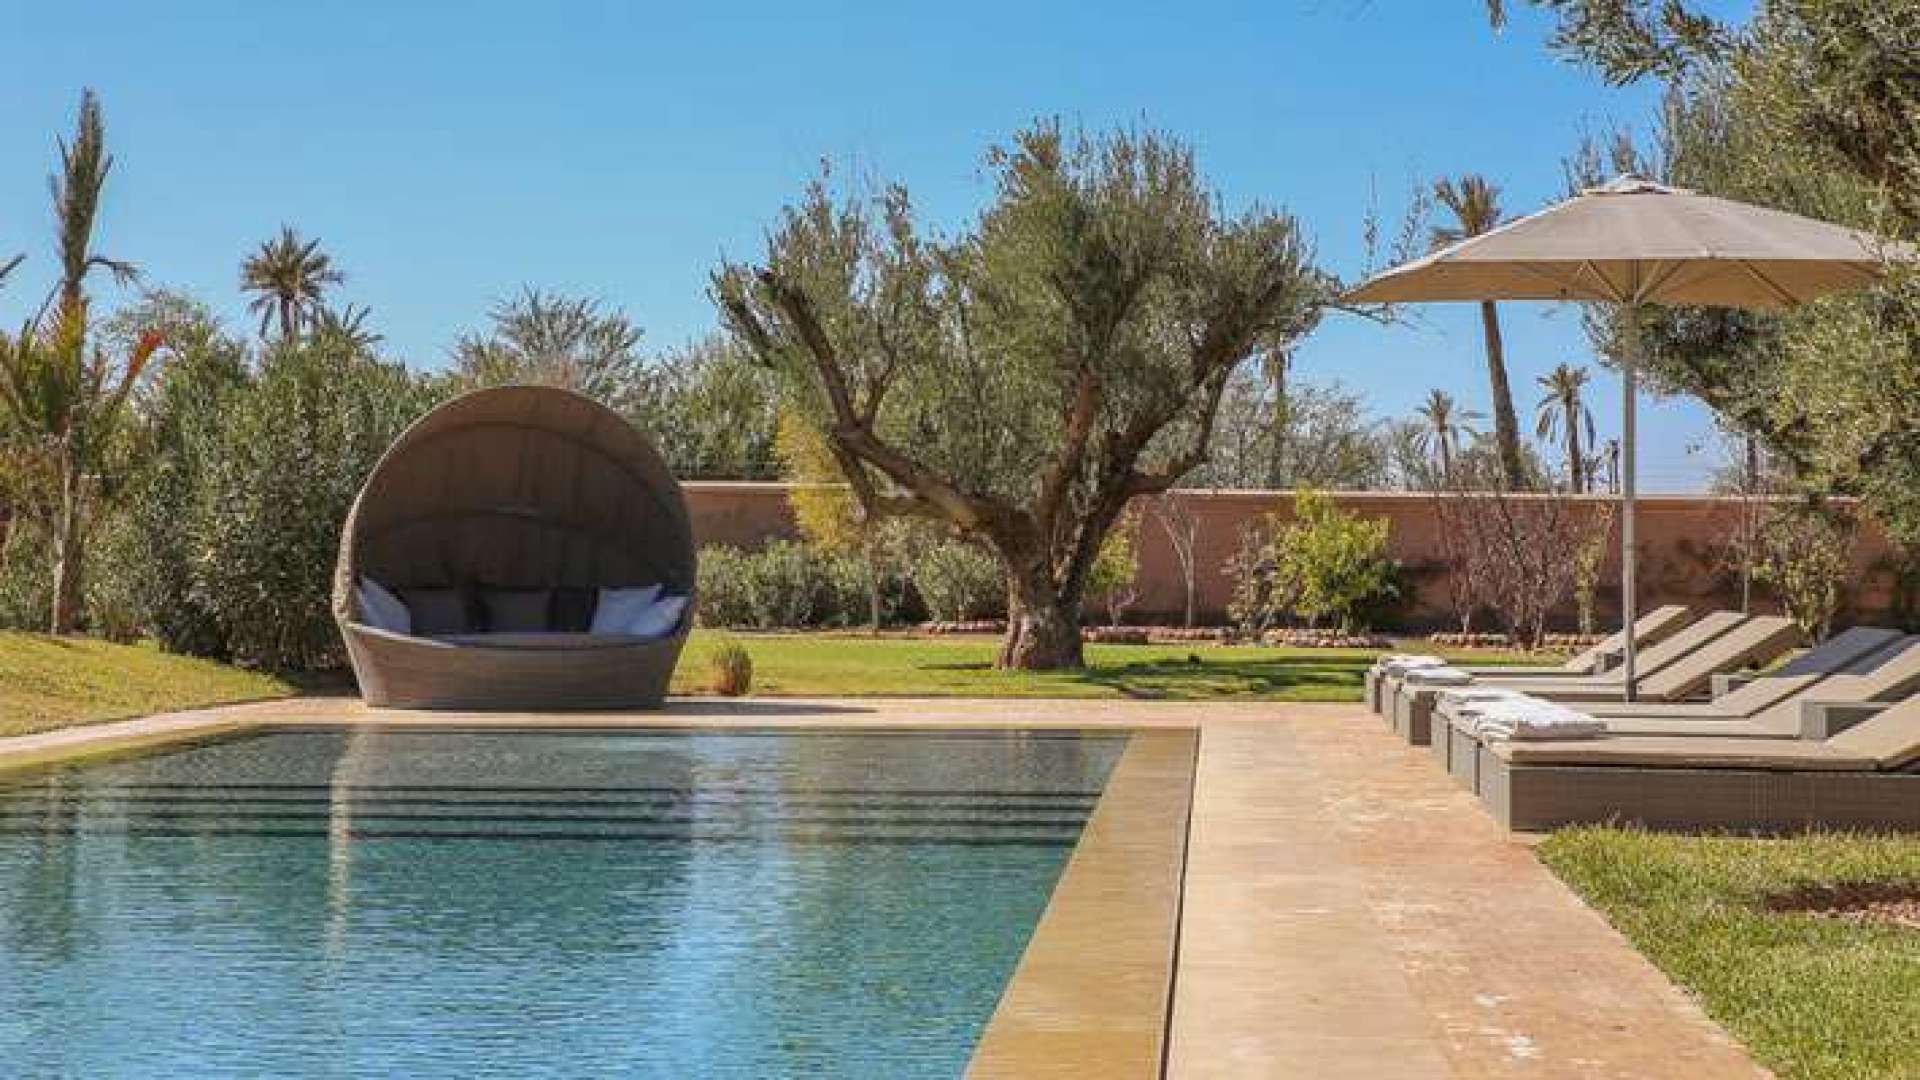 Location de vacances,Villa,Somptueuse villa 6ch dans la Palmeraie avec piscine couverte,Marrakech,Palmeraie